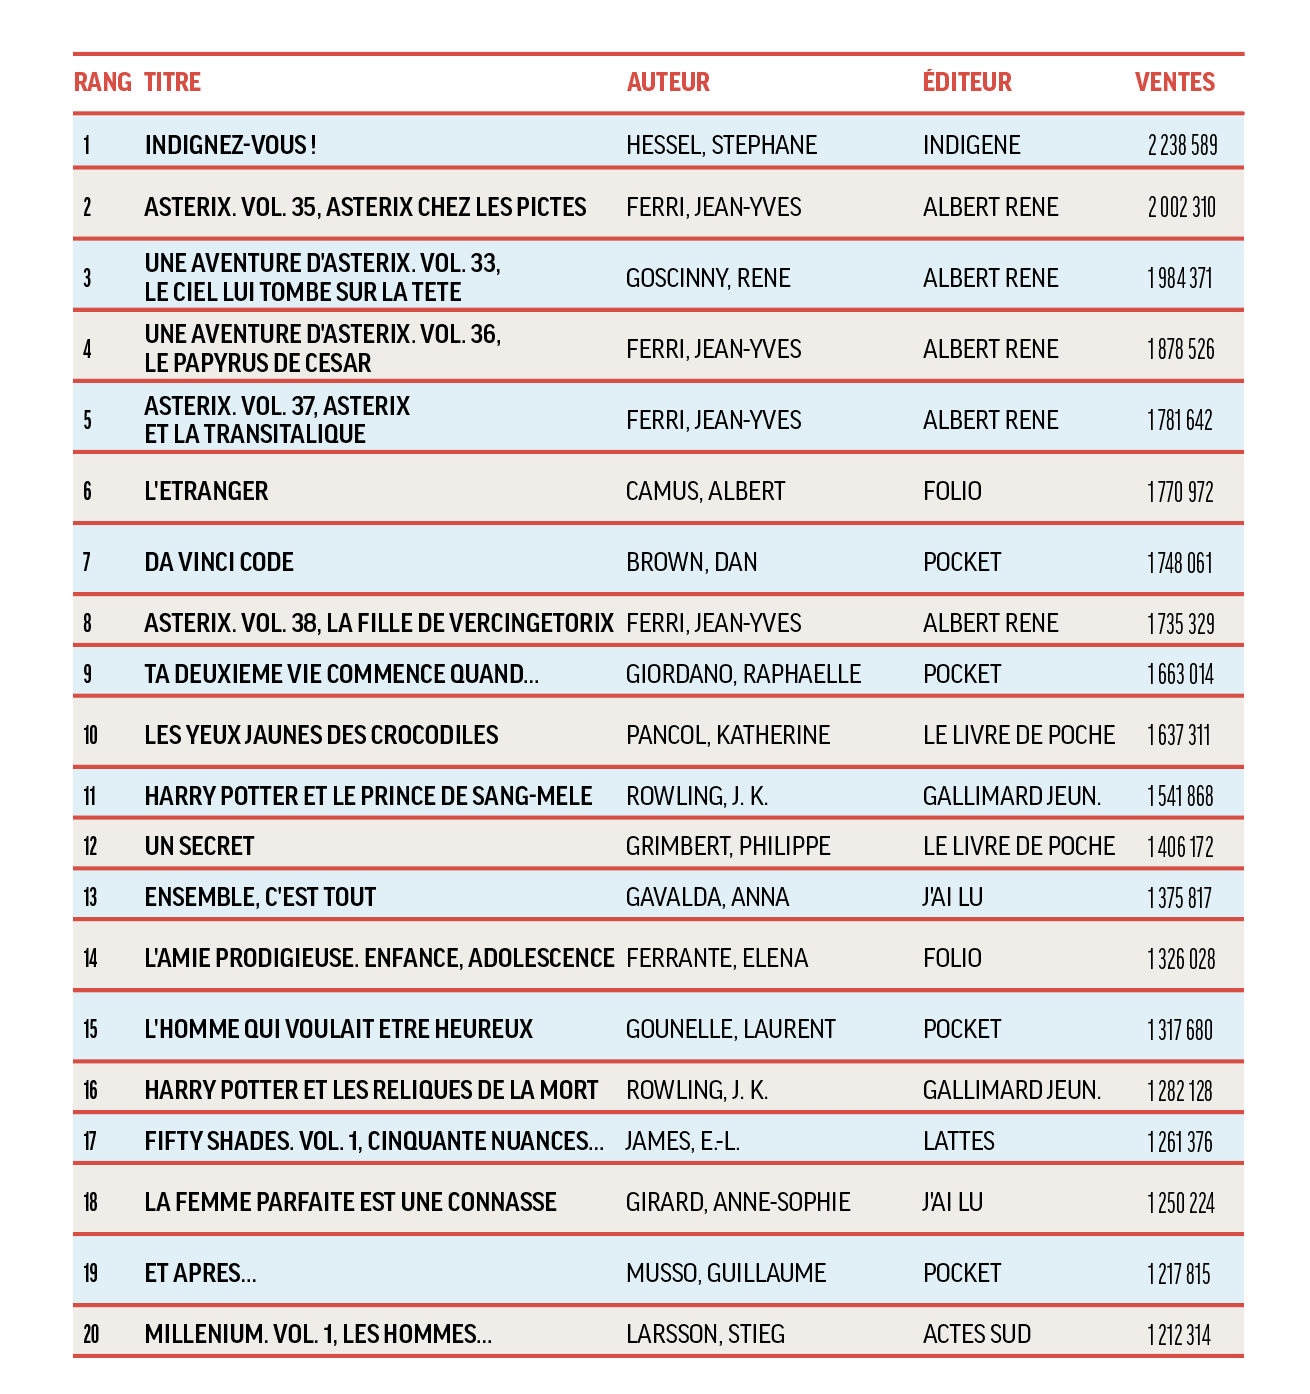 Les vingt meilleures ventes de livres entre 2005 et 2020 - Livres Hebdo